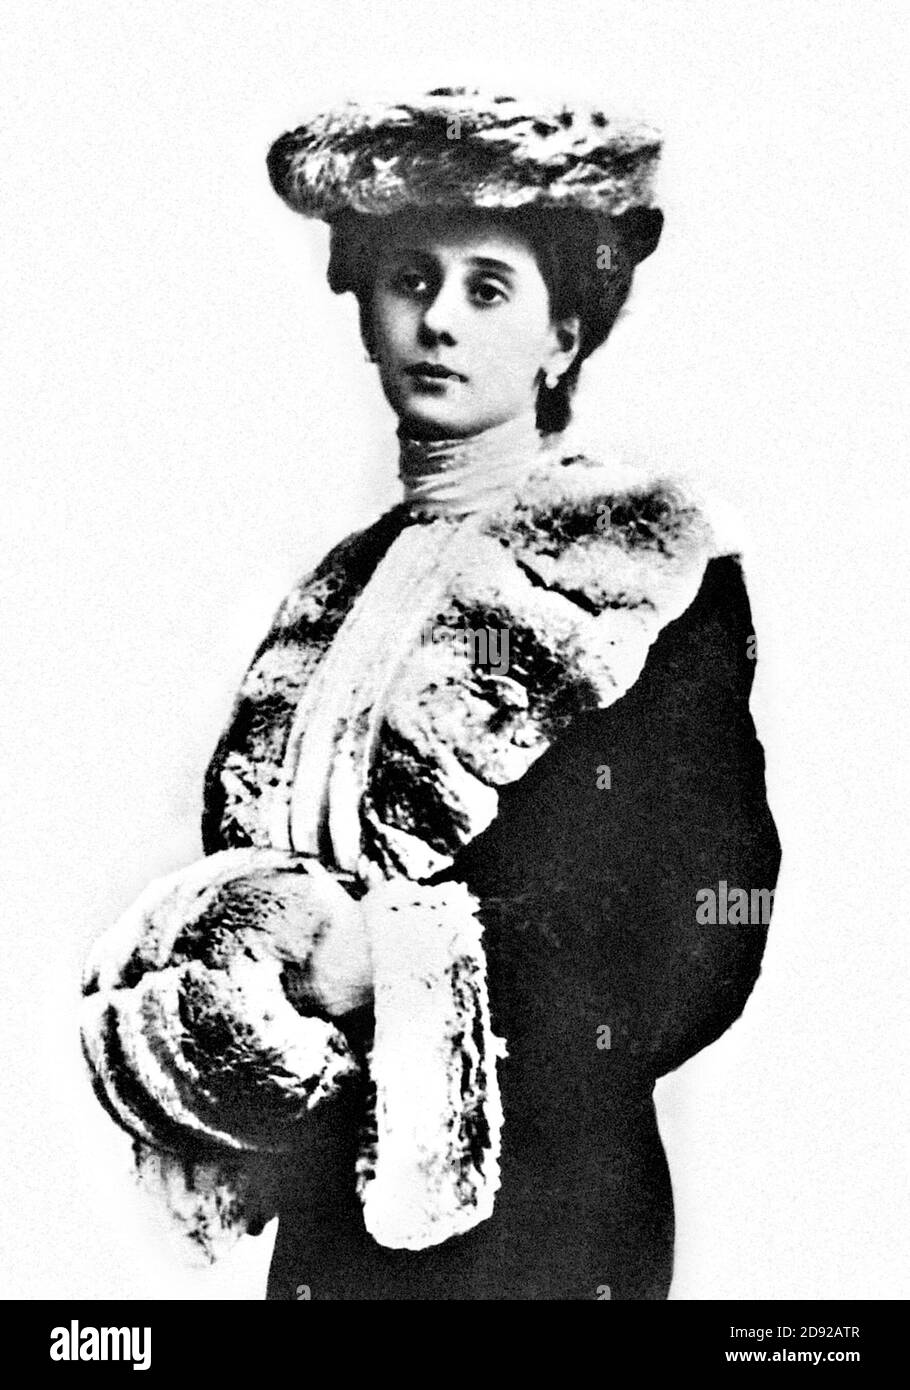 Anna Pavlova. Porträt der russischen Balletttänzerin Anna Pavlovna Pavlova (geb. Anna Matwejewna Pavlova, 1881-1931), in der Rolle der Giselle, ca. 1905 Stockfoto